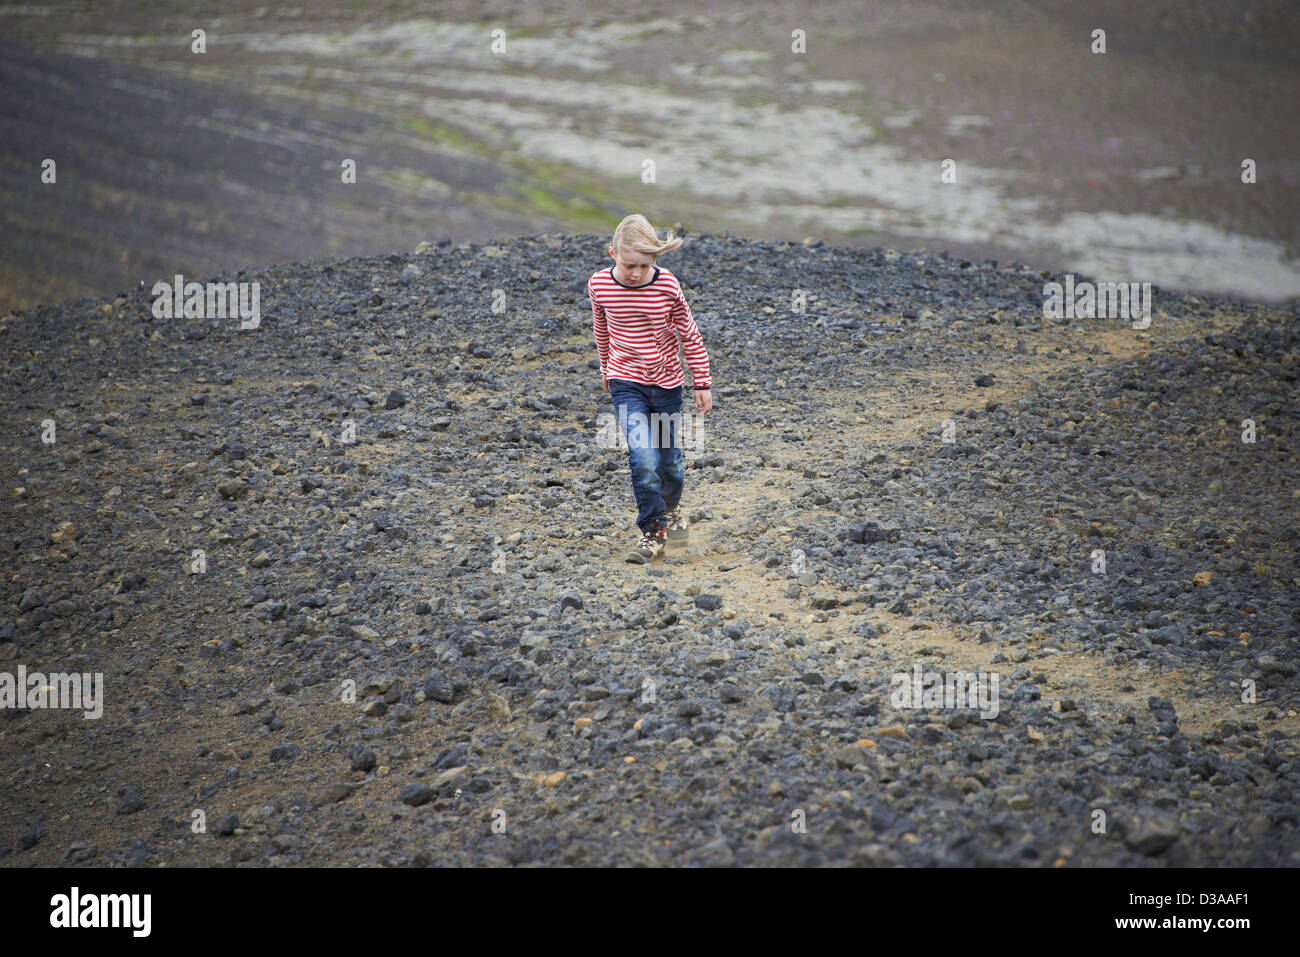 Girl walking in rocky landscape Stock Photo